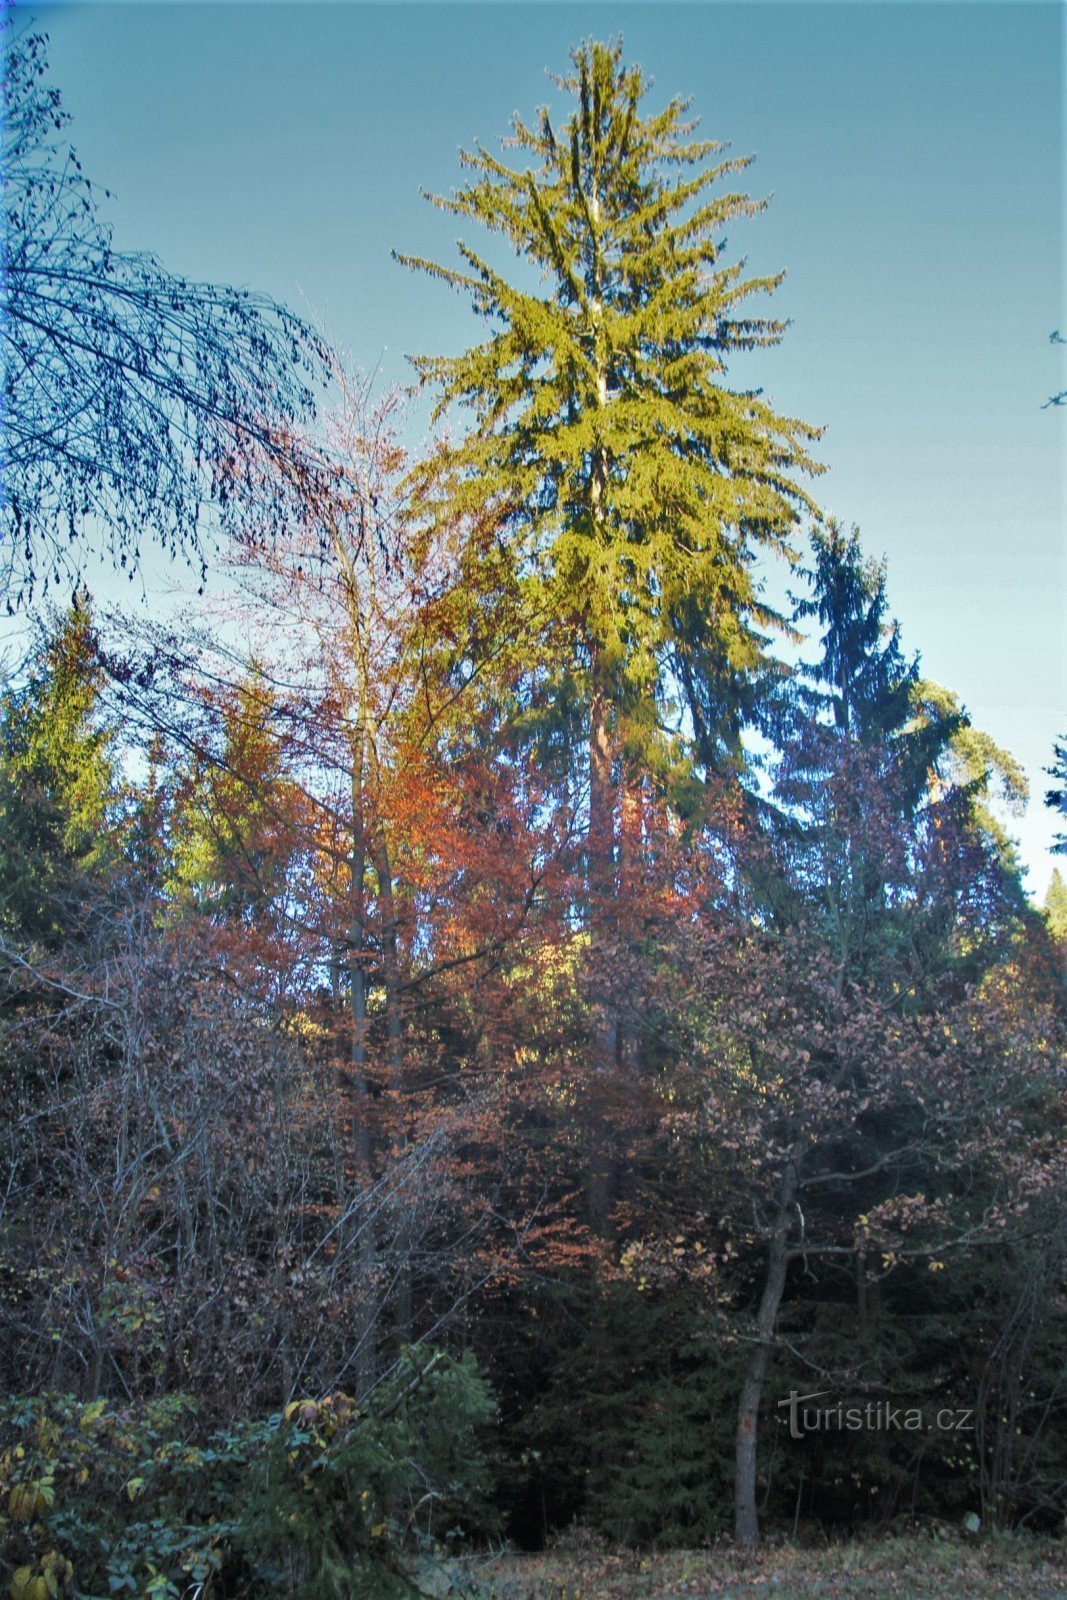 Granstammar överstiger de omgivande träden med mer än tio meter